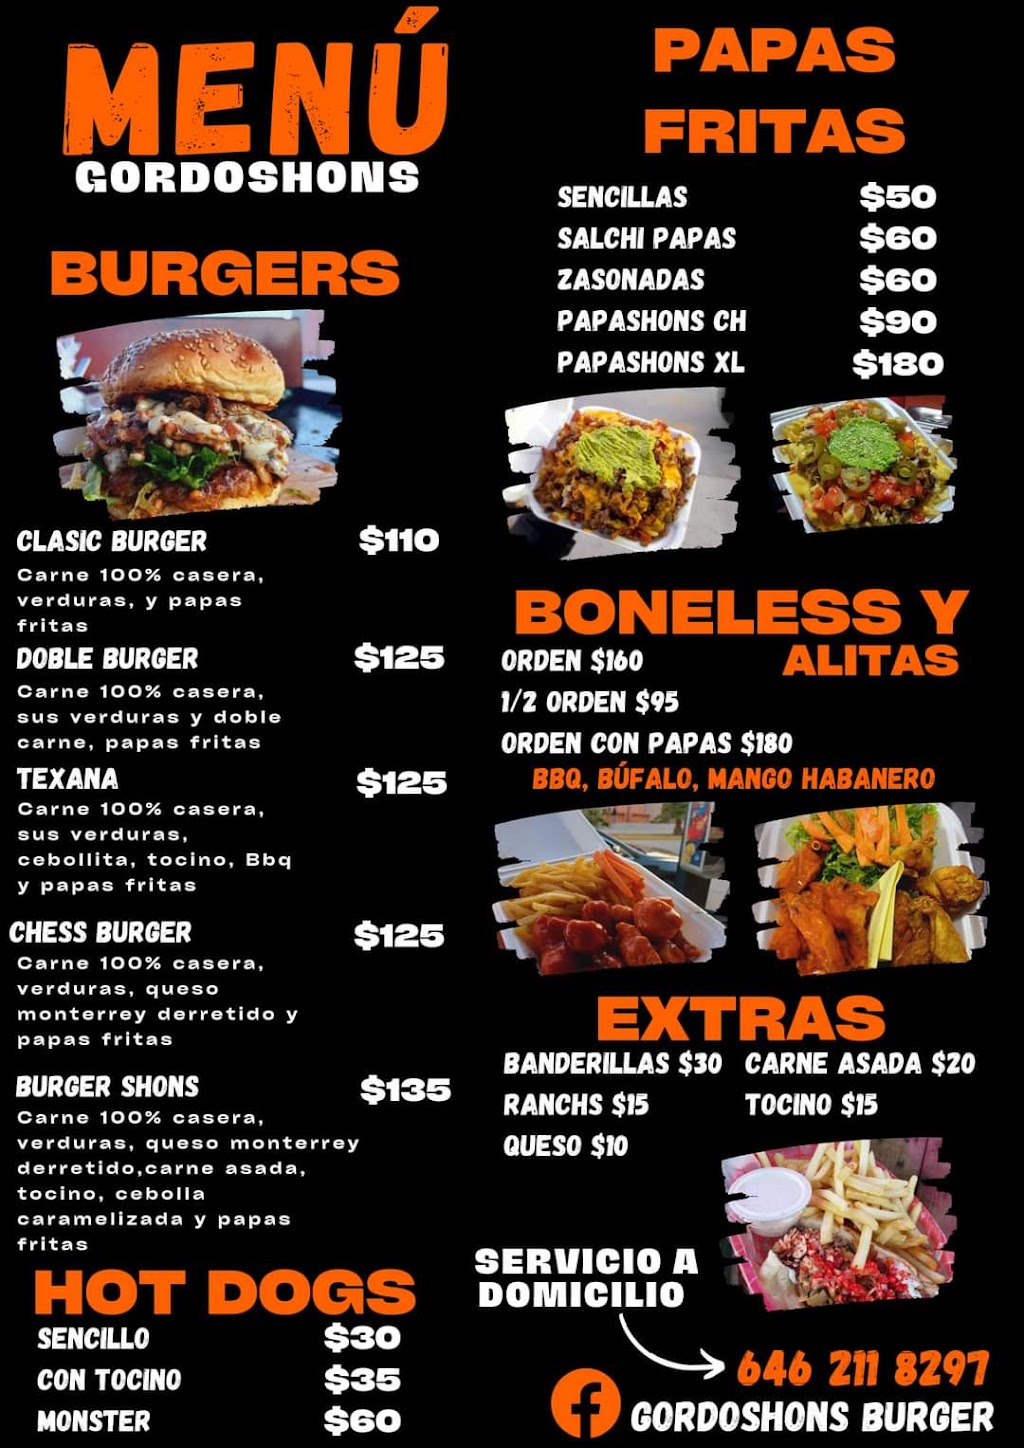 Gordoshons Burgers | 22819, Fraccionamiento Los Encinos, 22819 Ensenada, B.C., Mexico | Phone: 646 211 8297